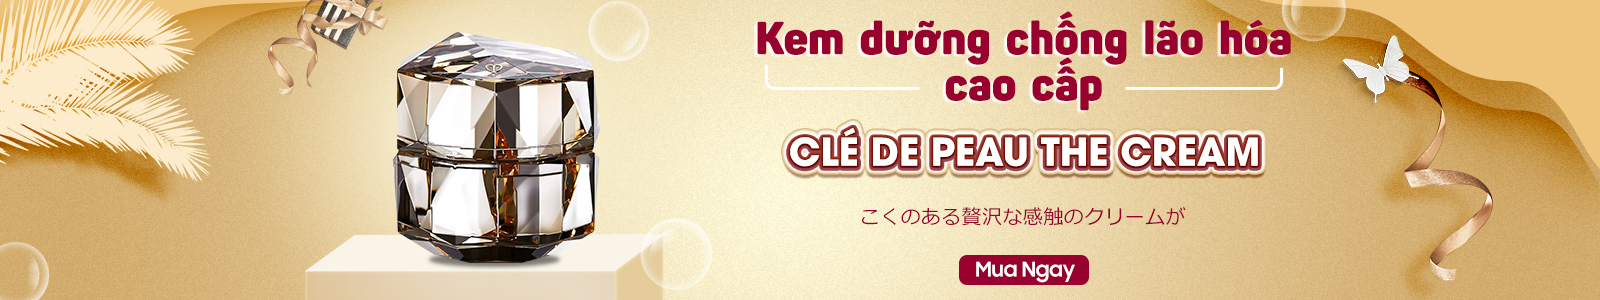 Kem dưỡng chống lão hóa cao cấp Cle de Peau The Cream 50ml